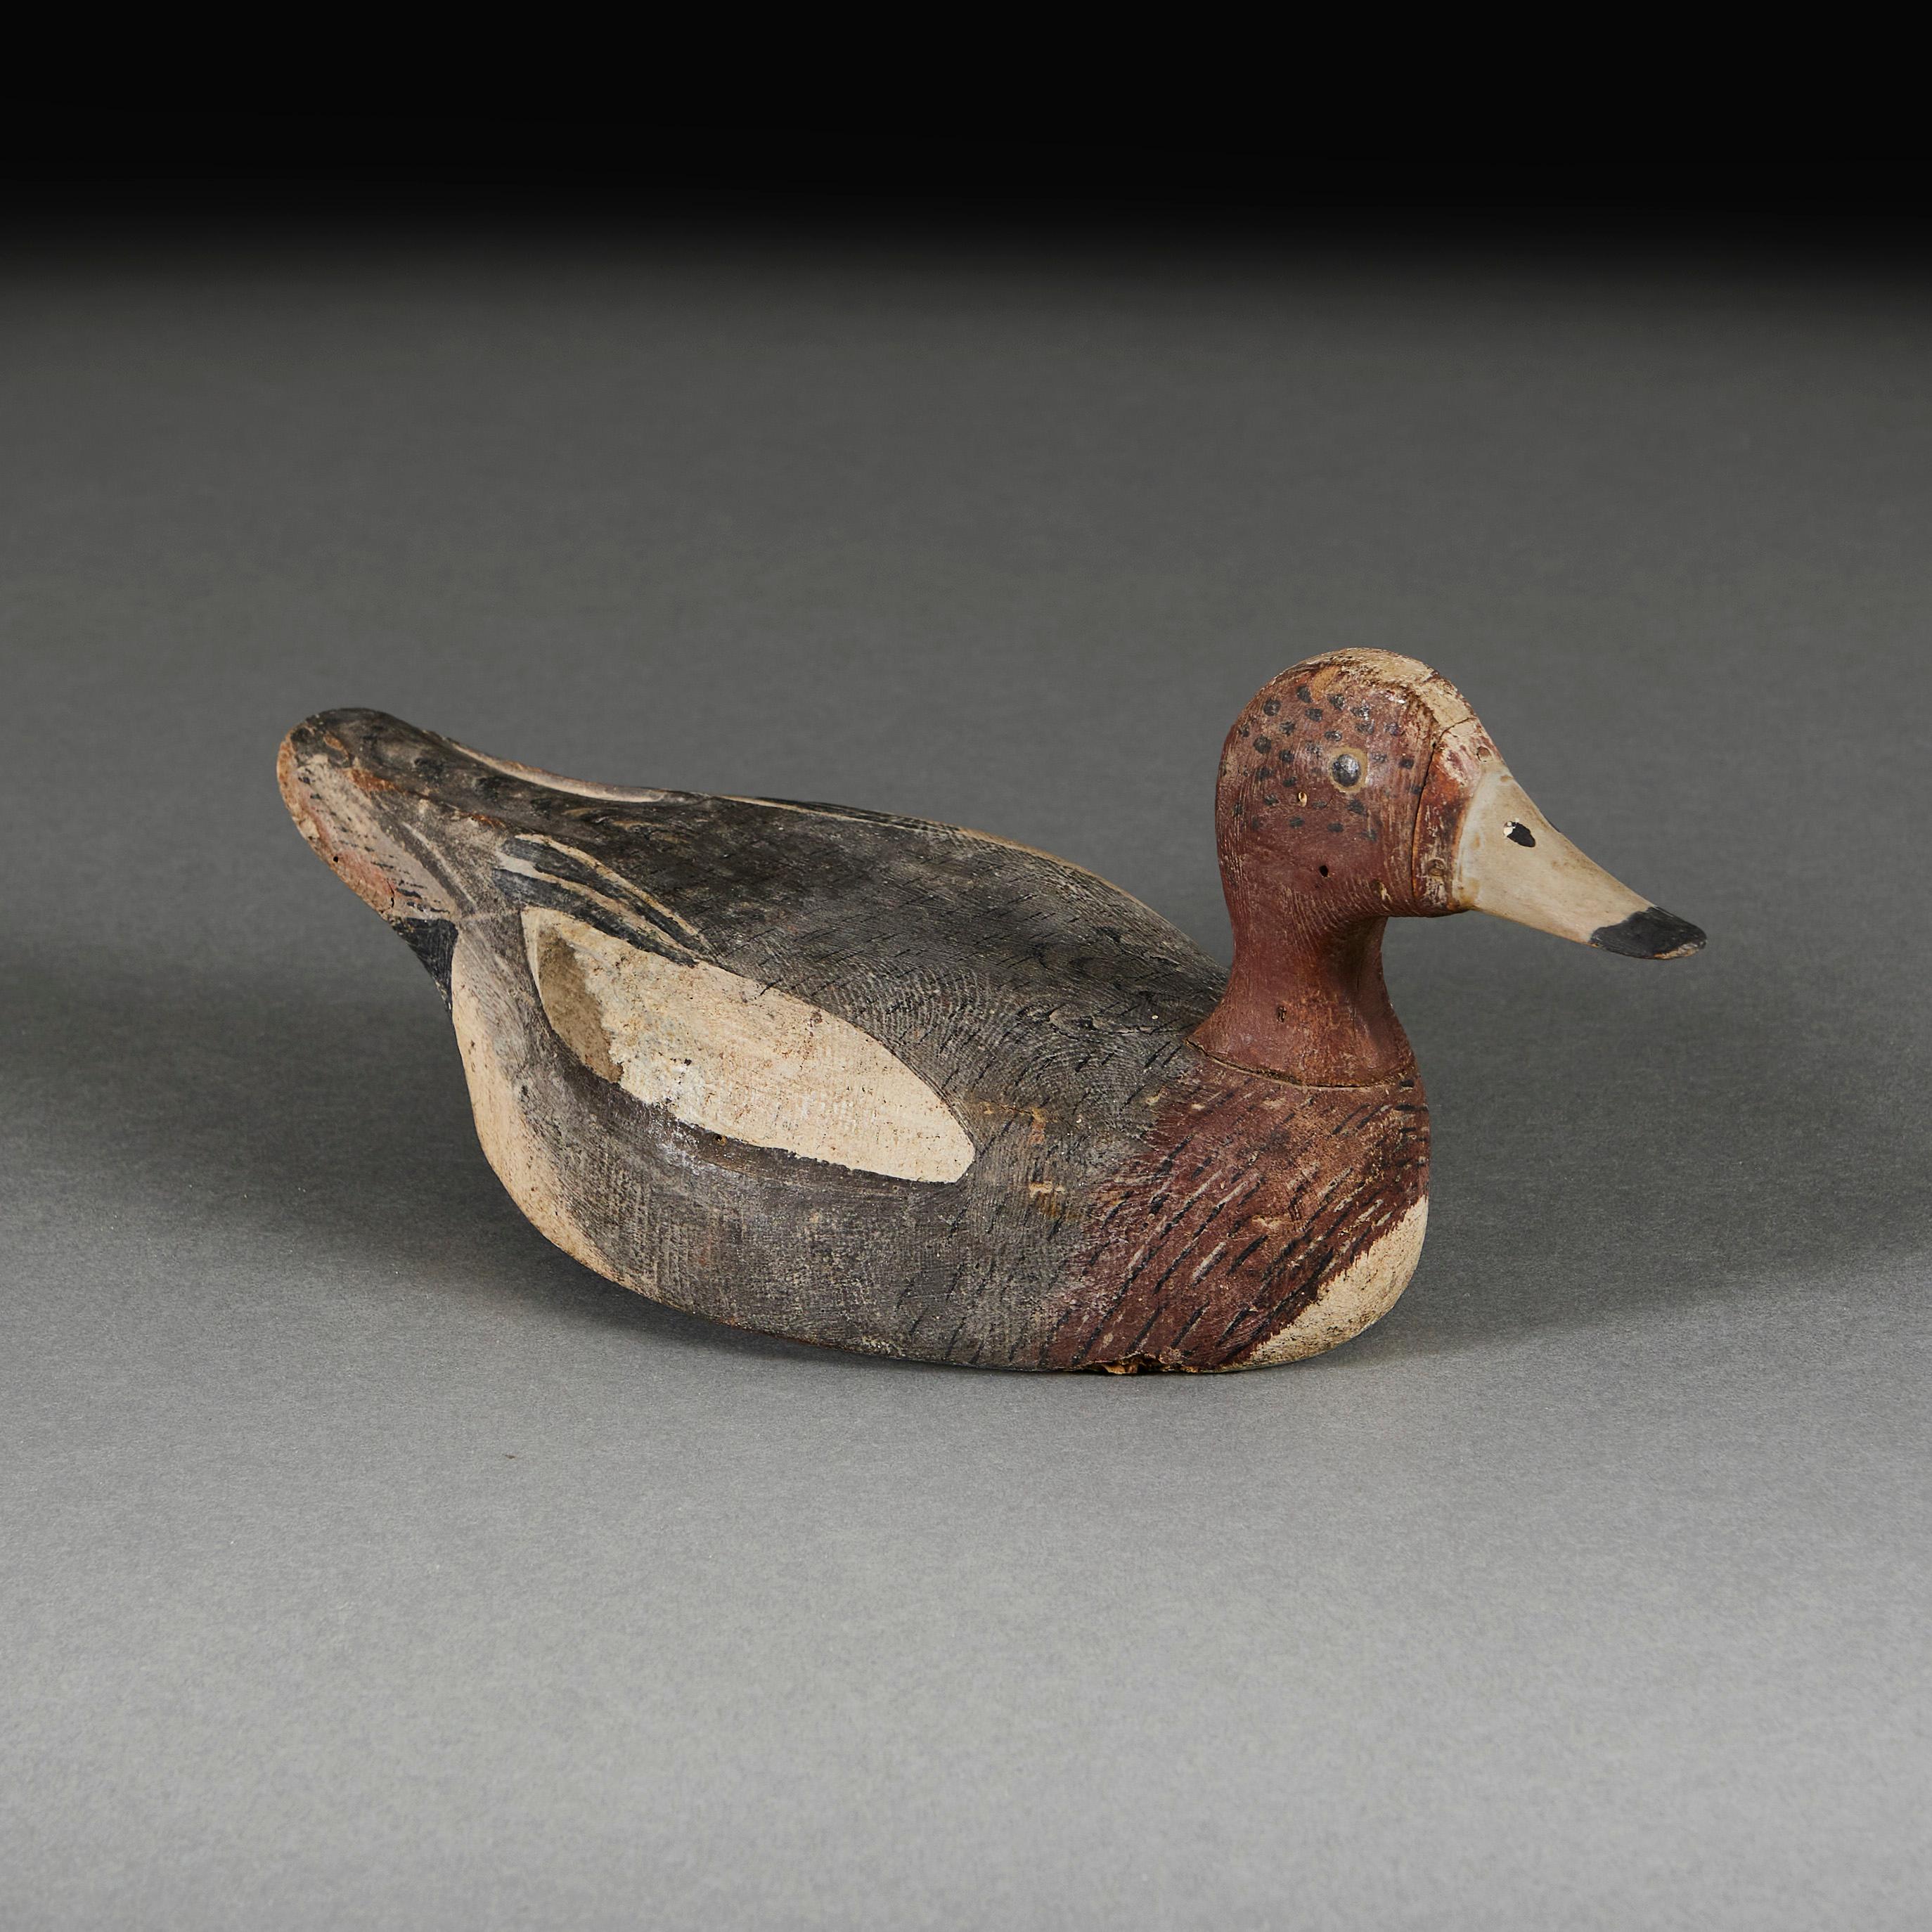 20th Century A Charming Folk Art Decoy Duck For Sale